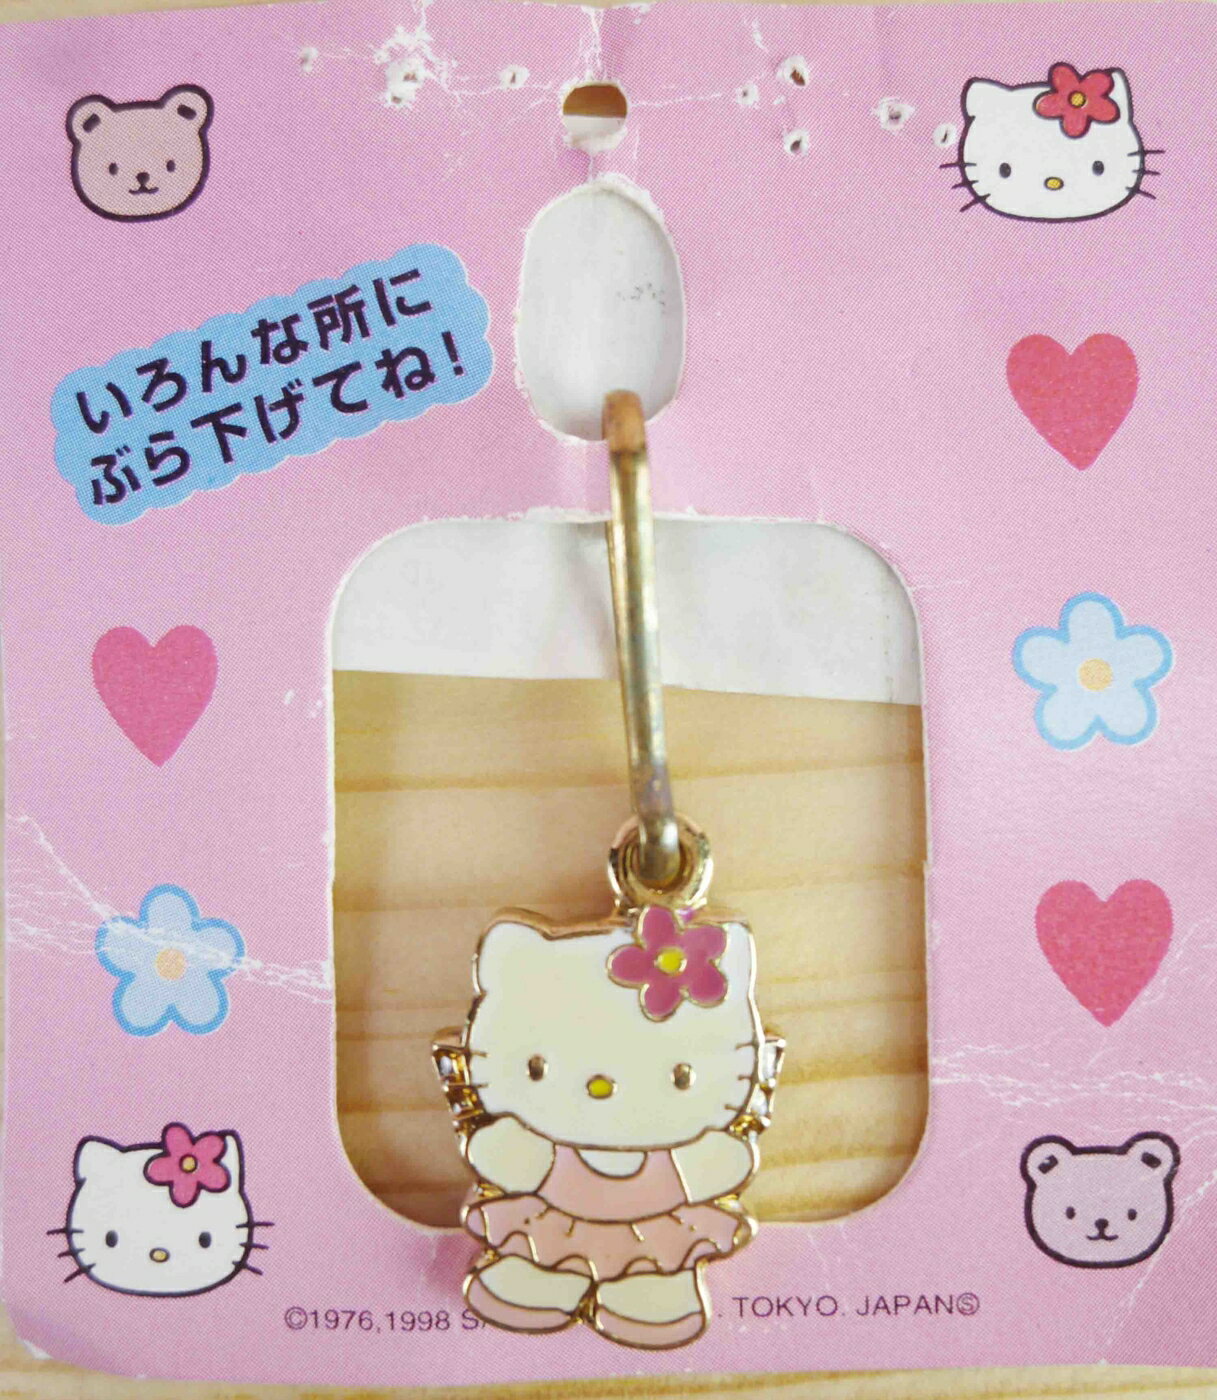 【震撼精品百貨】Hello Kitty 凱蒂貓 KITTY吊飾拉扣-跳舞 震撼日式精品百貨